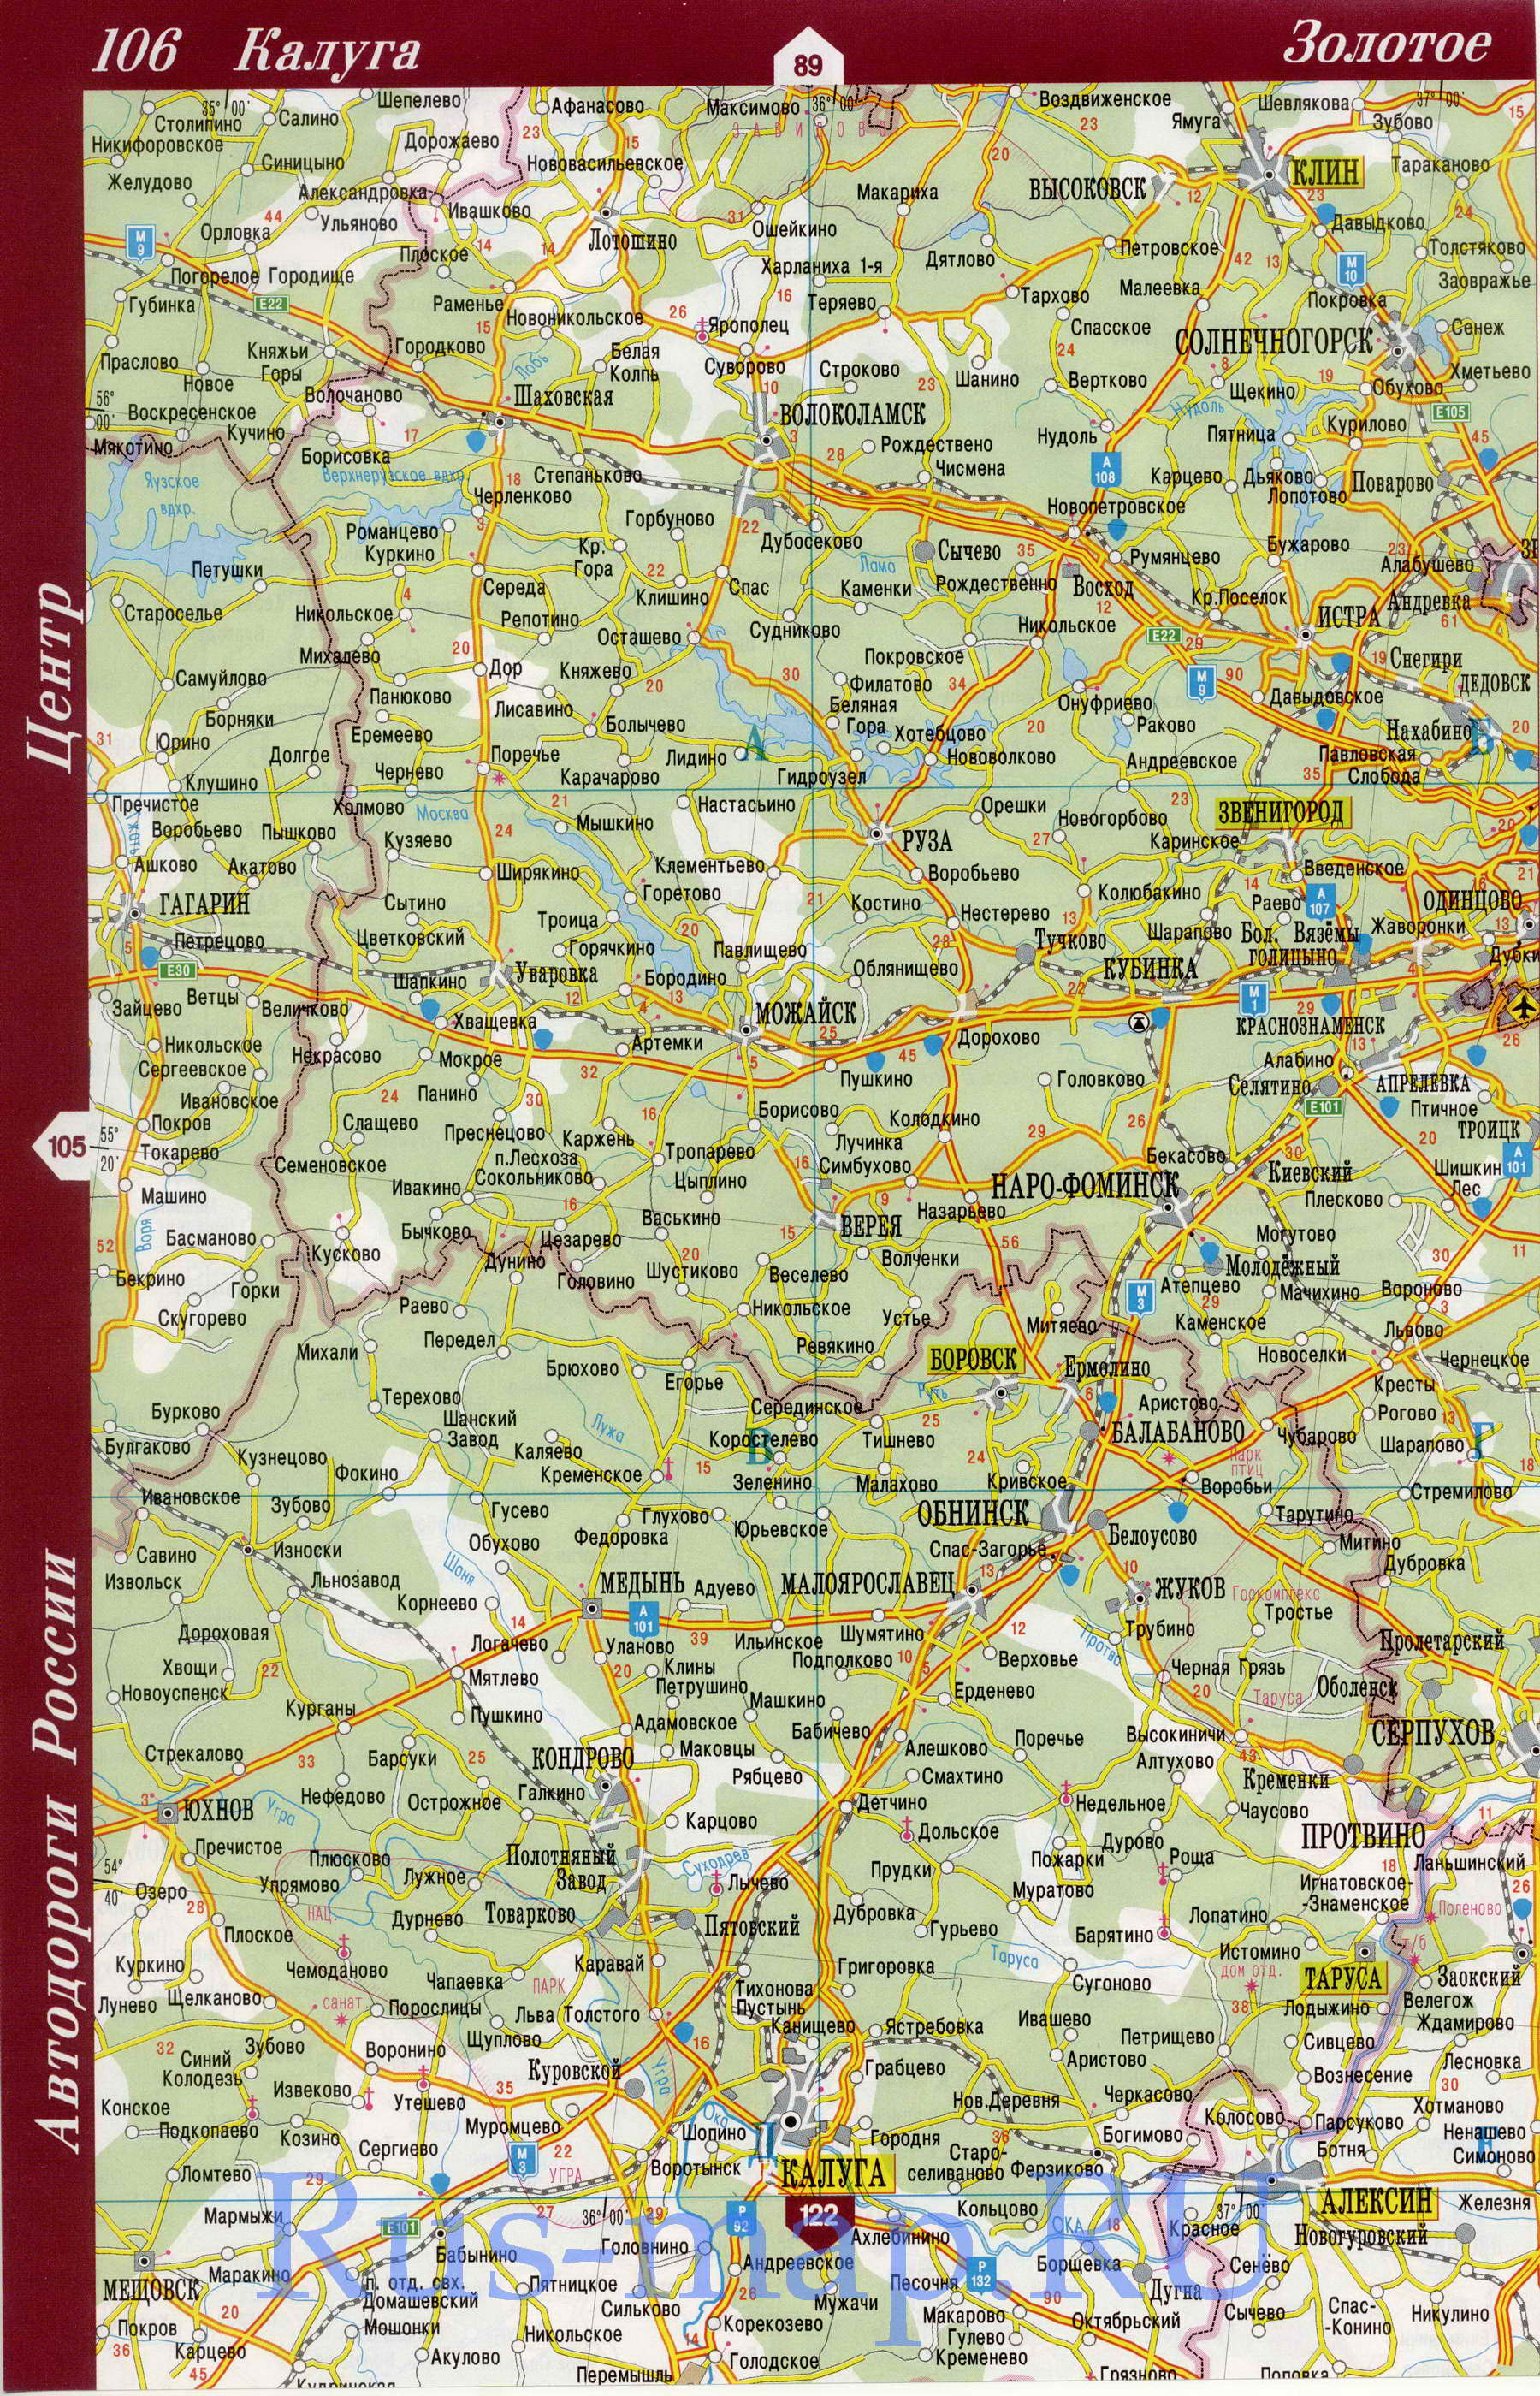 Карта Московской области и Подмосковья. Карта дорог Московской области и Подмосковья, A0 - 